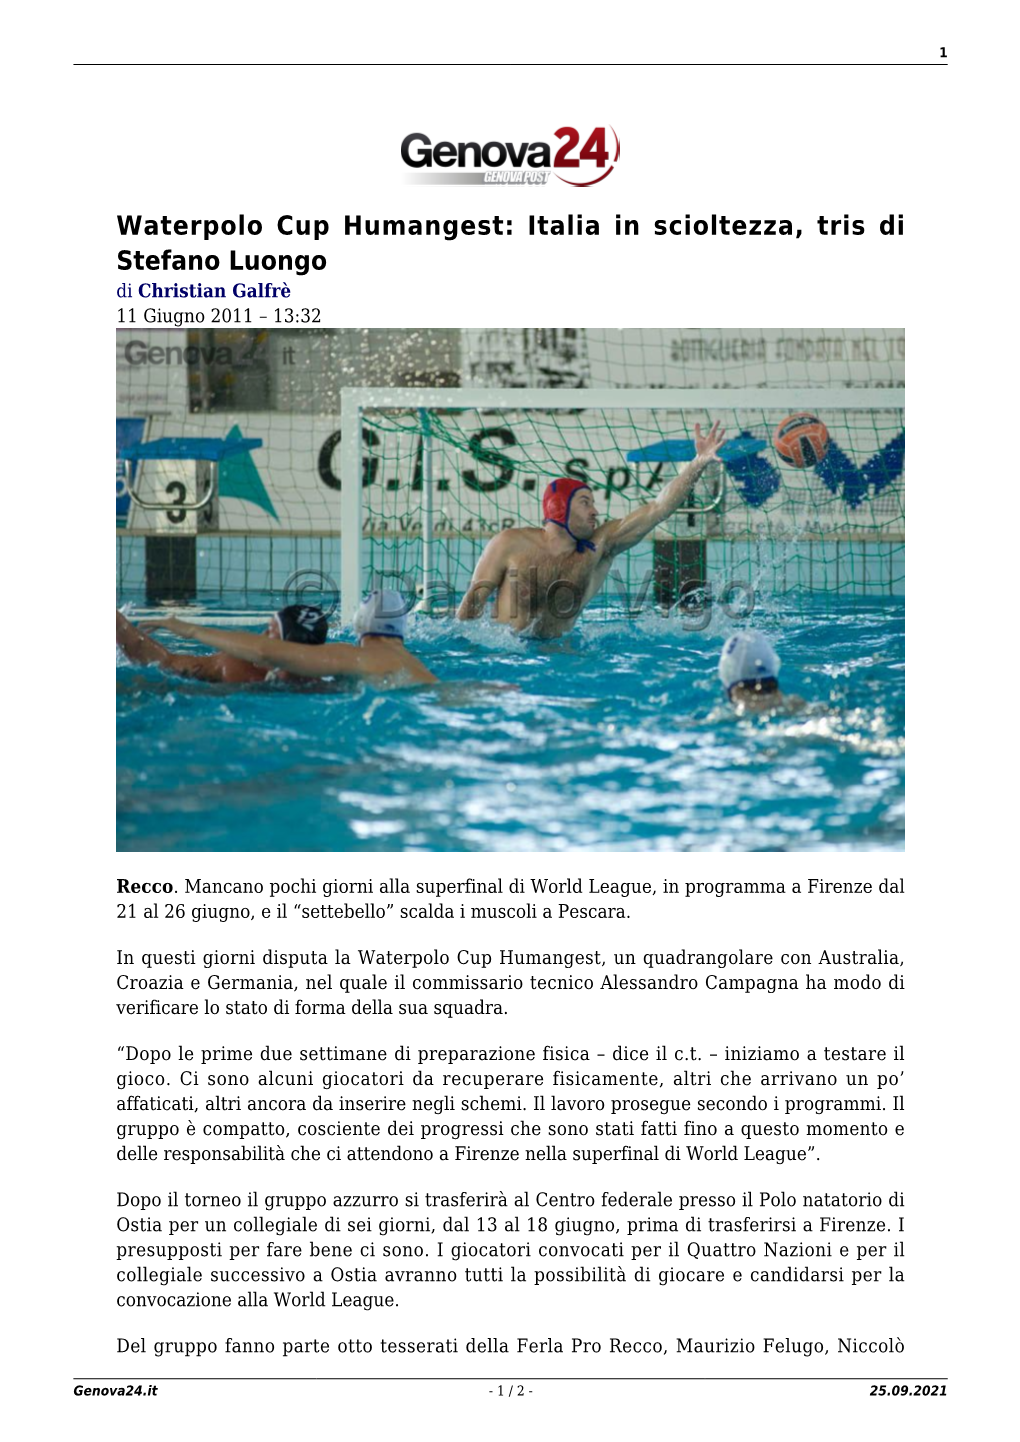 Waterpolo Cup Humangest: Italia in Scioltezza, Tris Di Stefano Luongo Di Christian Galfrè 11 Giugno 2011 – 13:32